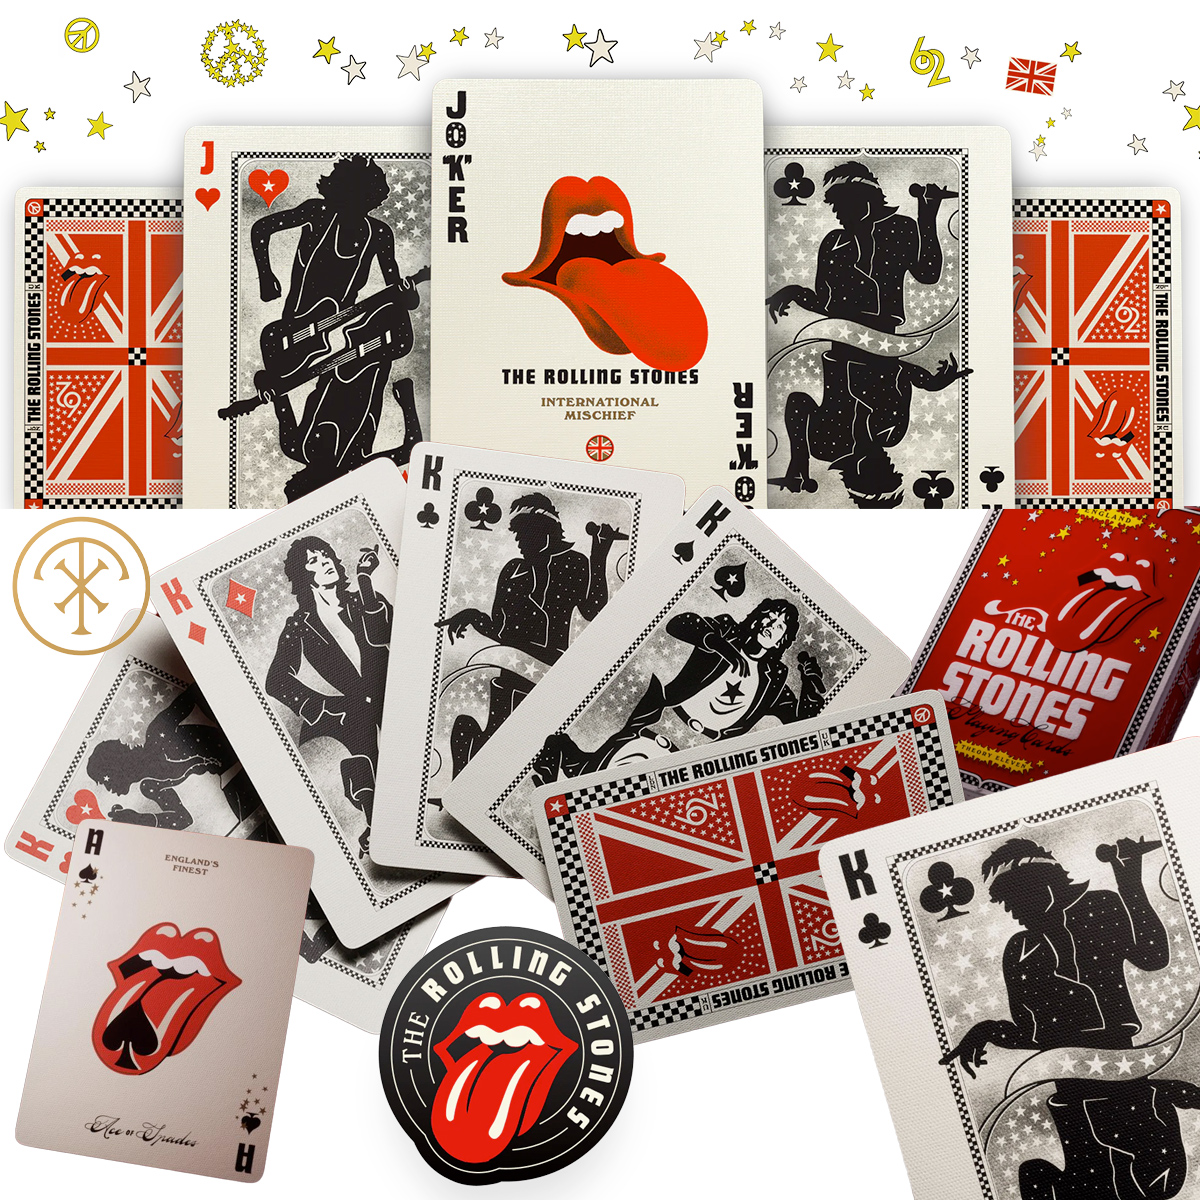 Baralho The Rolling Stones com Cartas Premium de Luxo da Theory11